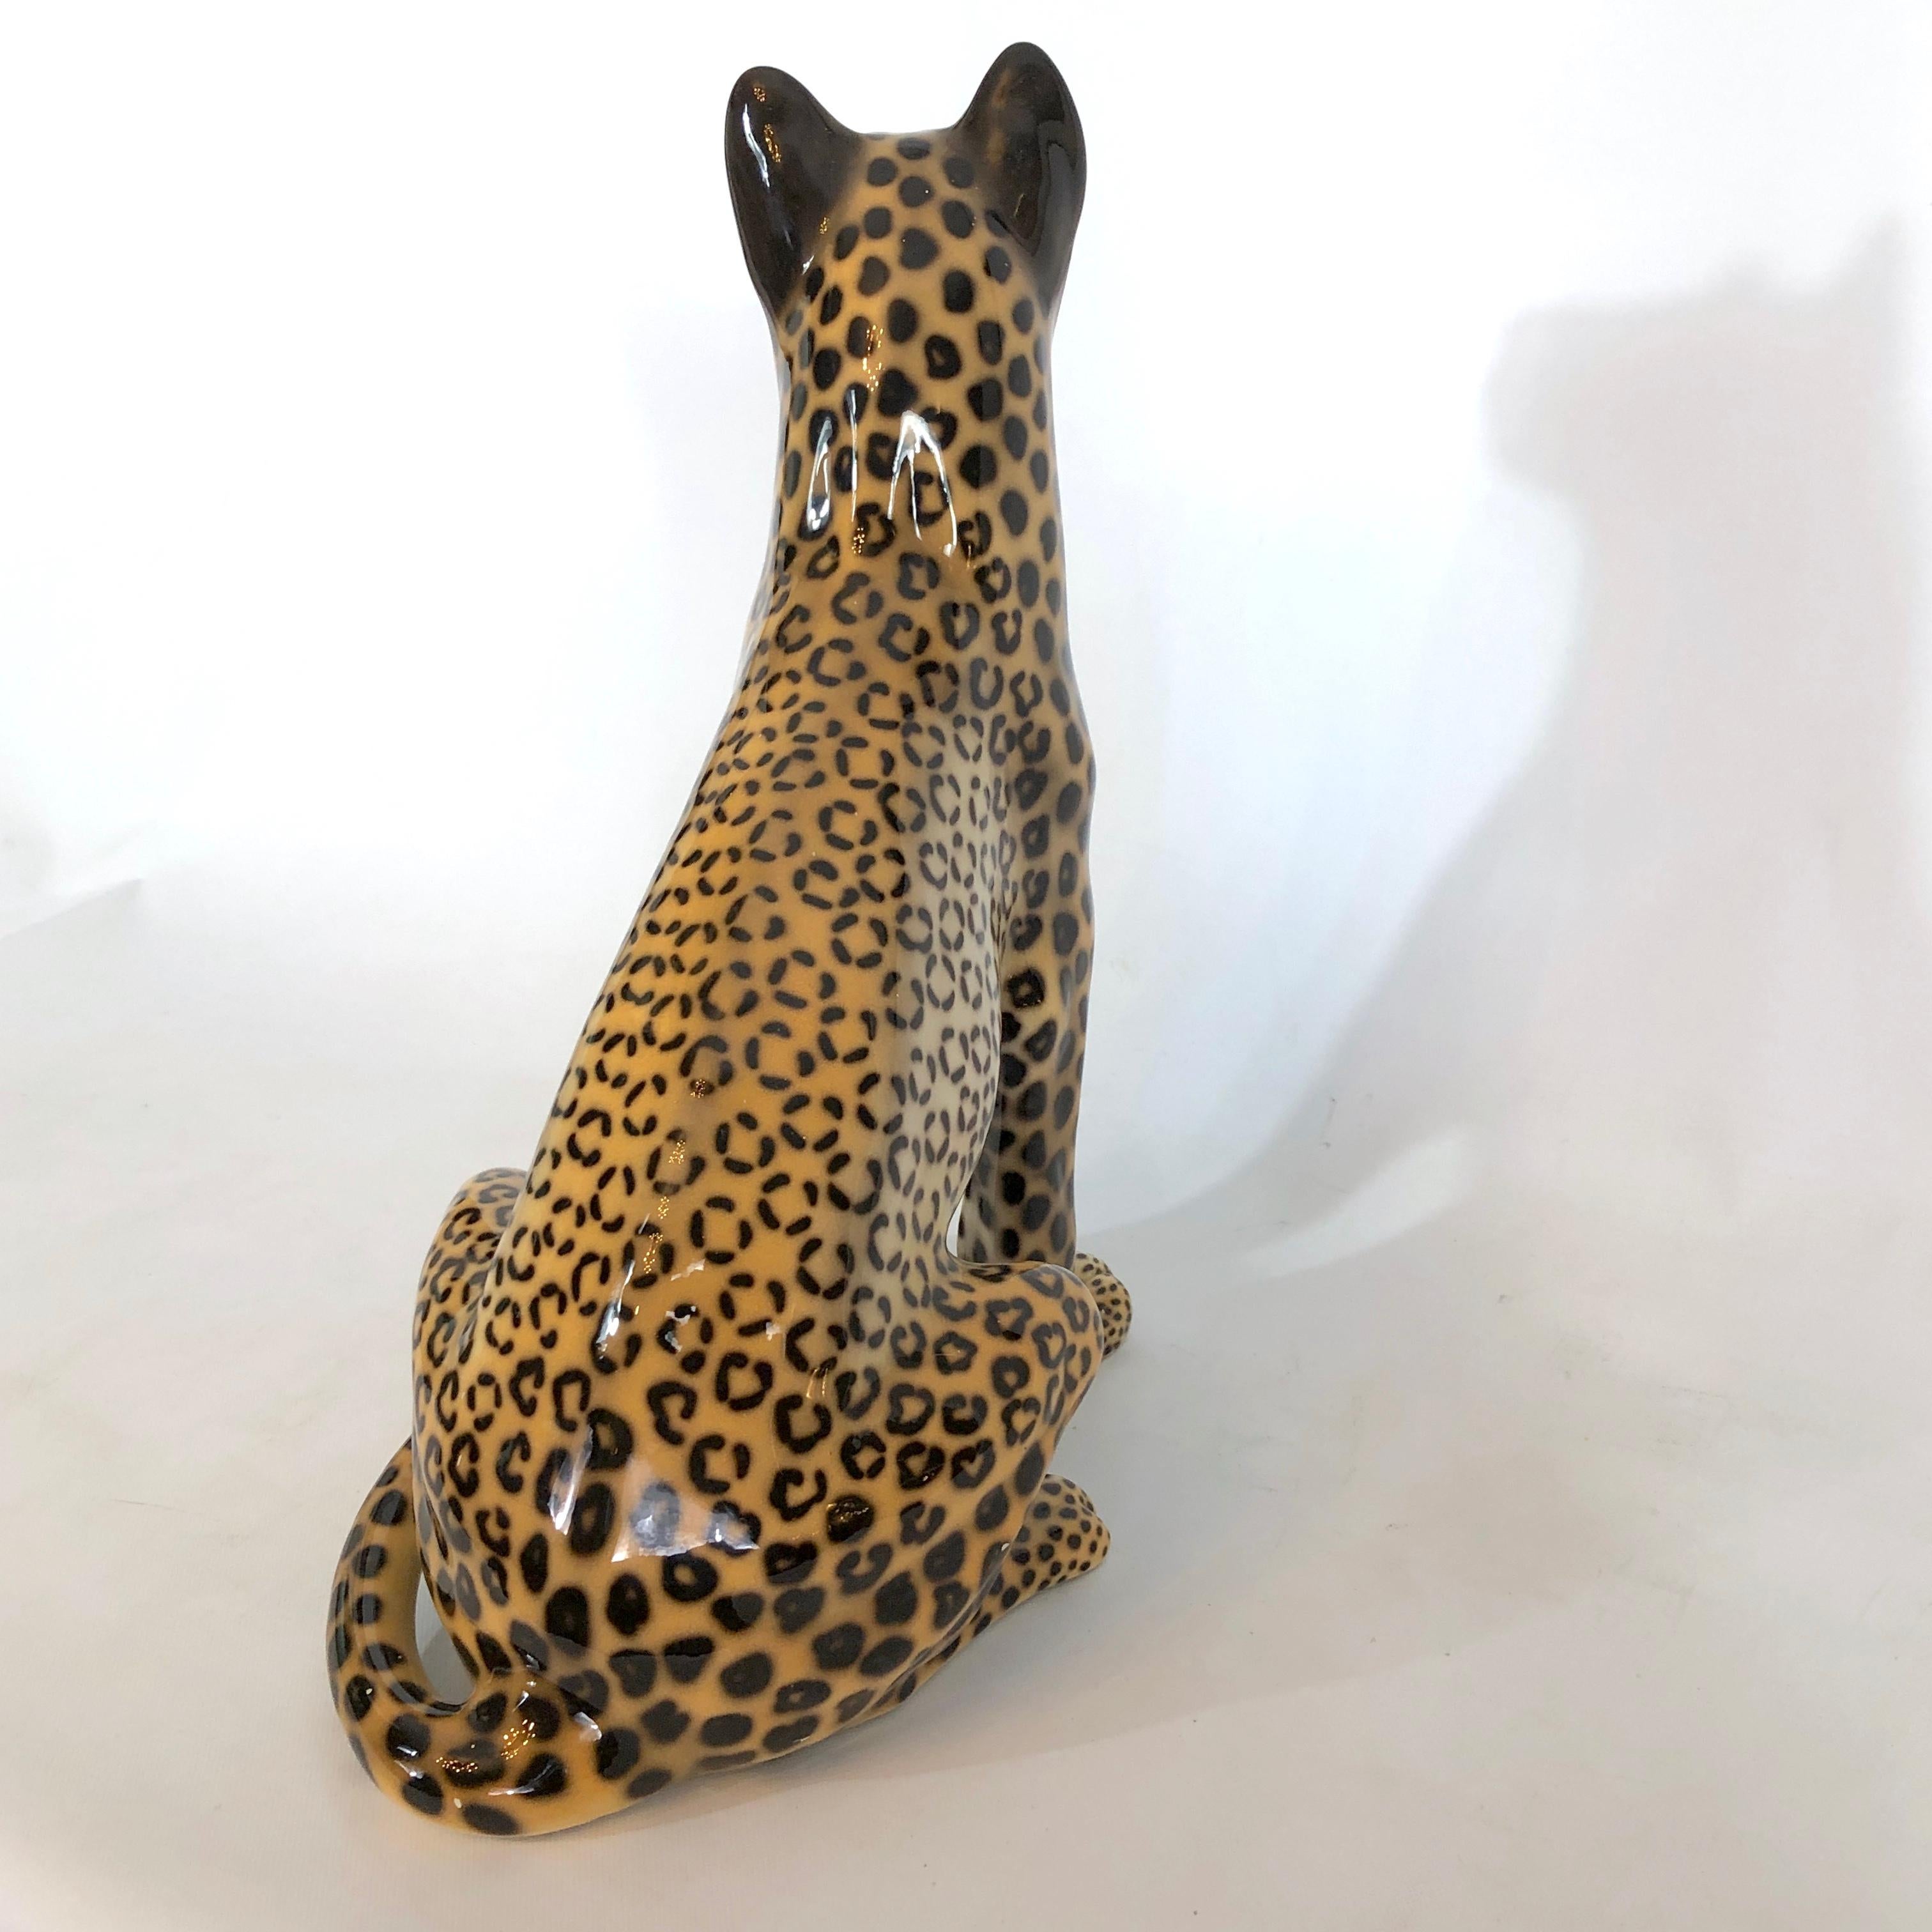 Großer italienischer Vintage-Keramik-Leopard aus den 60er Jahren. Unterzeichnet 4